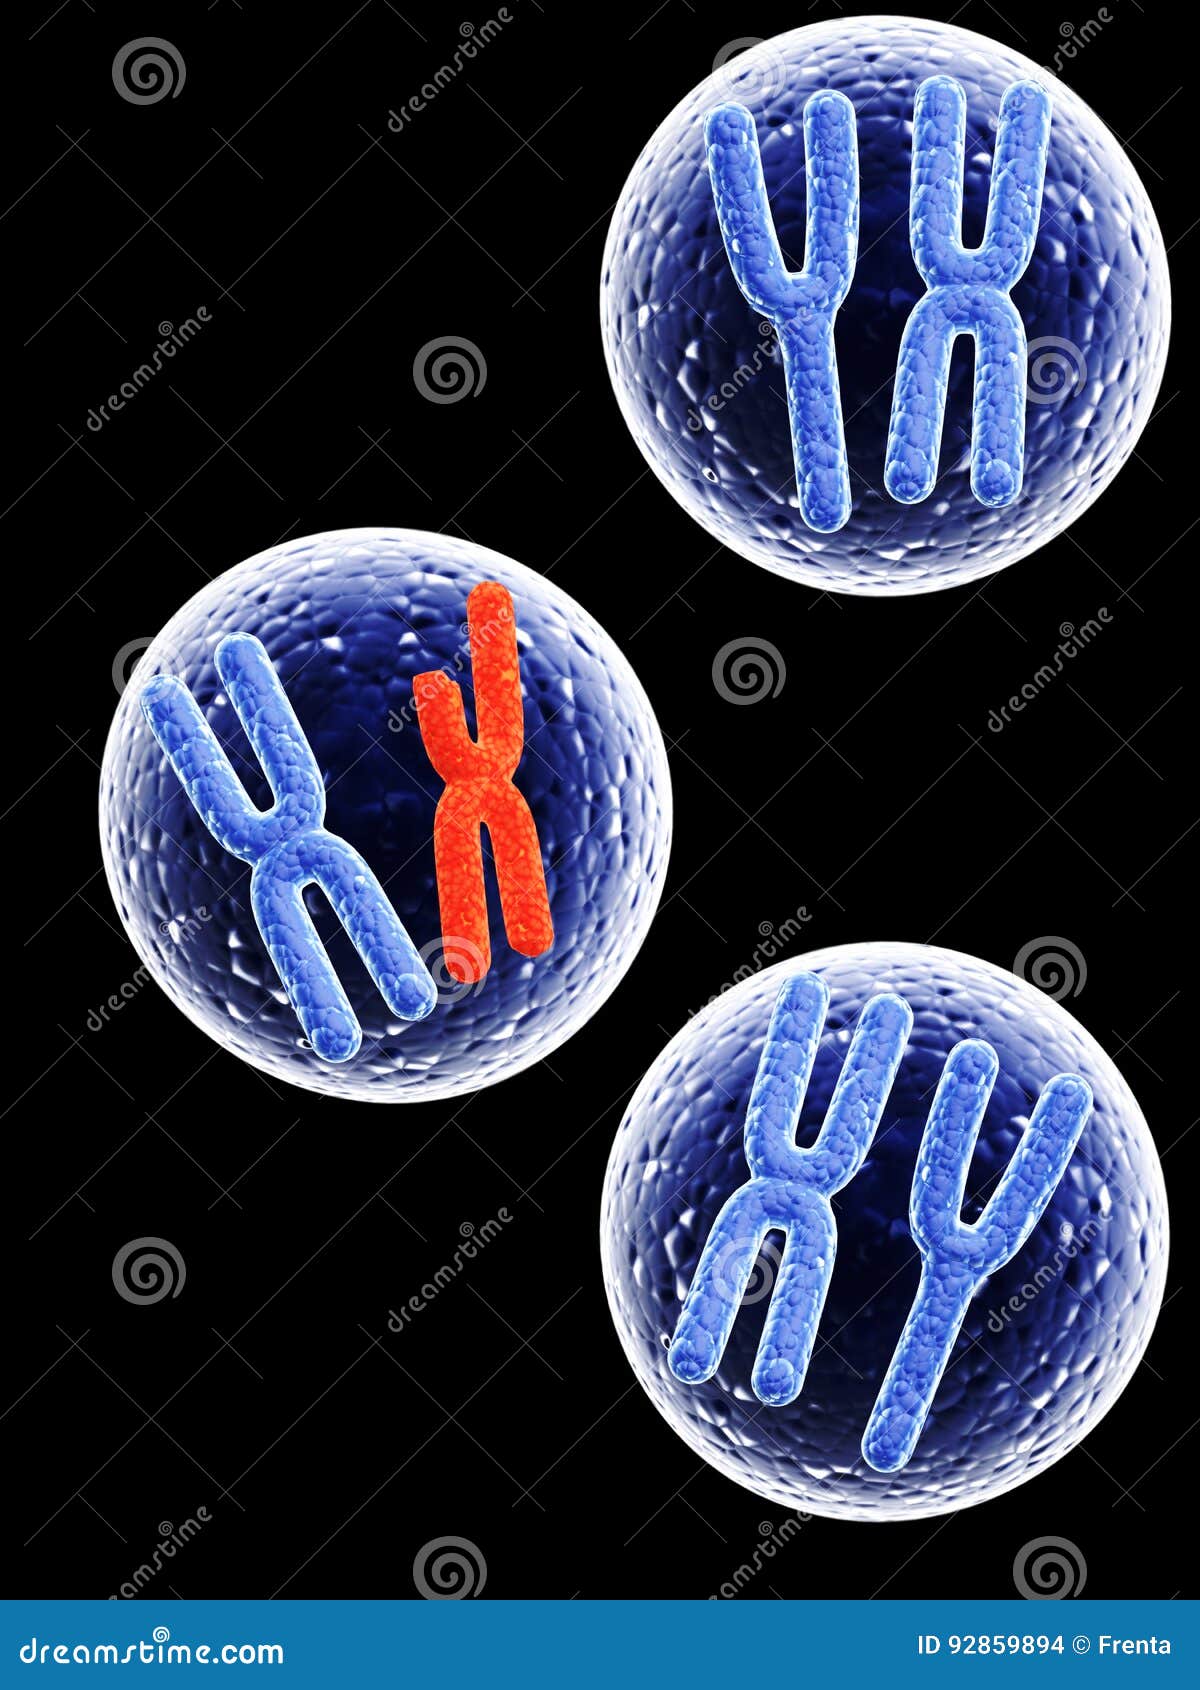 Chromosomes là những hạt di truyền quan trọng nhất trong cơ thể con người. Hãy xem những bức ảnh liên quan đến Chromosomes của chúng tôi và tìm hiểu thêm về chúng.